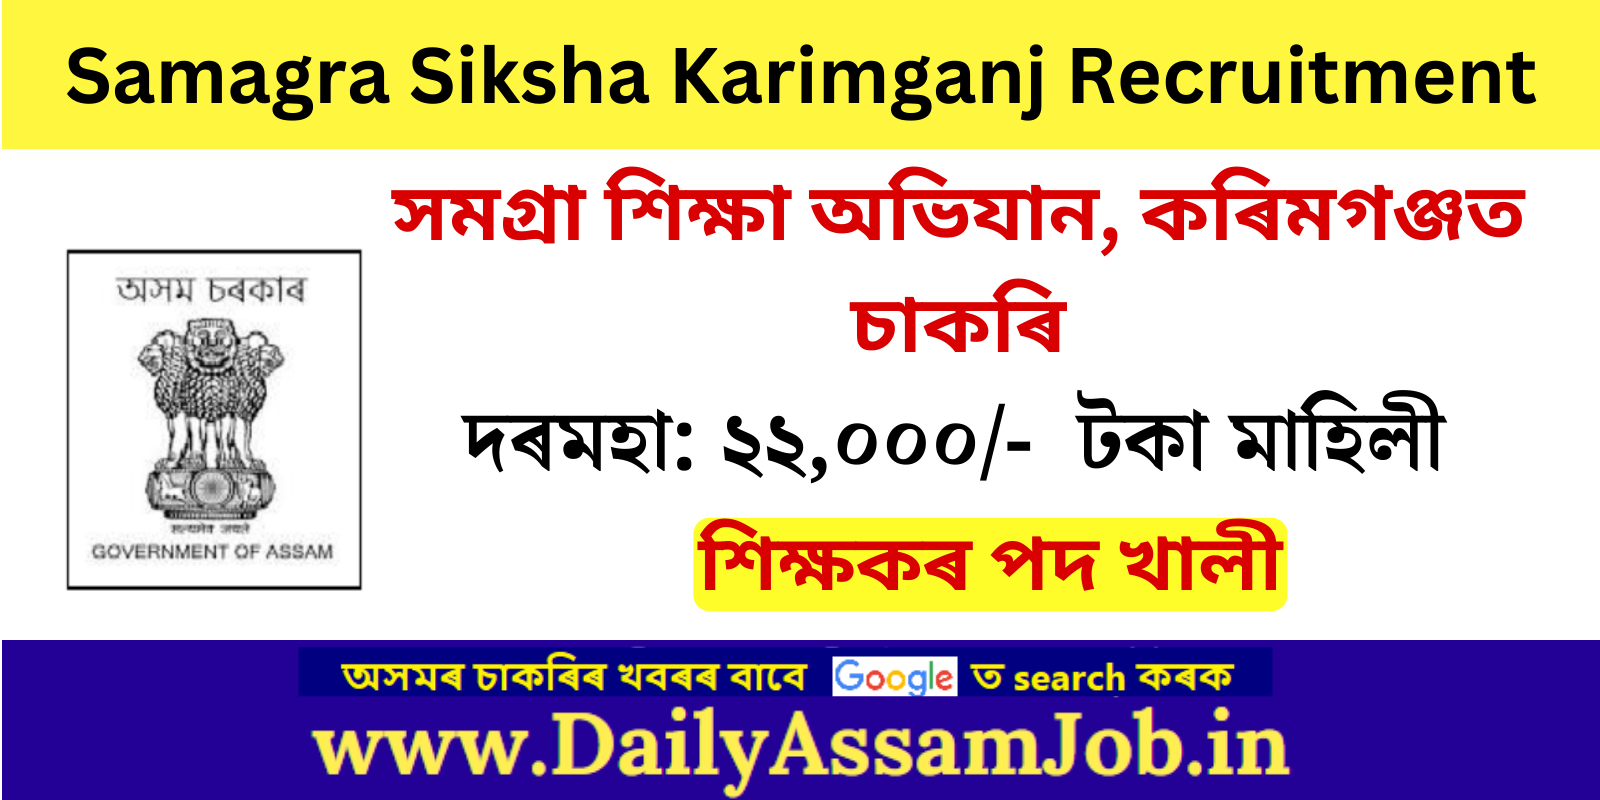 Assam Career :: Samagra Siksha Karimganj Recruitment for 08 Teacher Vacancy